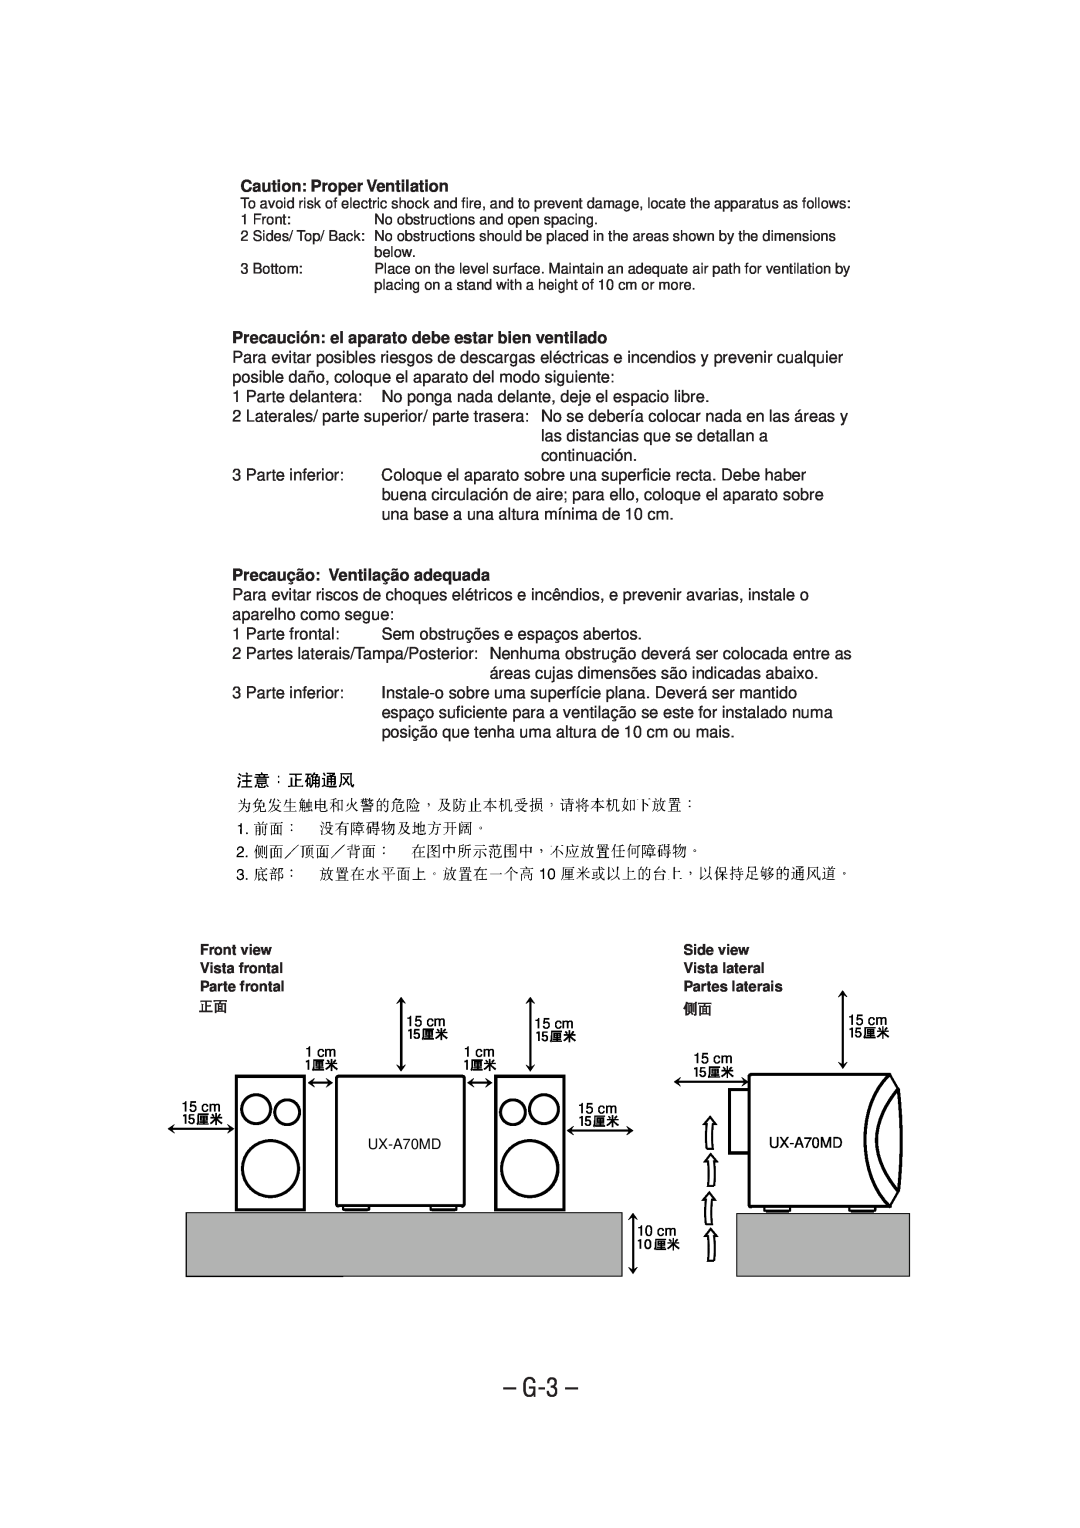 JVC UX-A70MD manual G-3, Caution Proper Ventilation, Precaución el aparato debe estar bien ventilado 